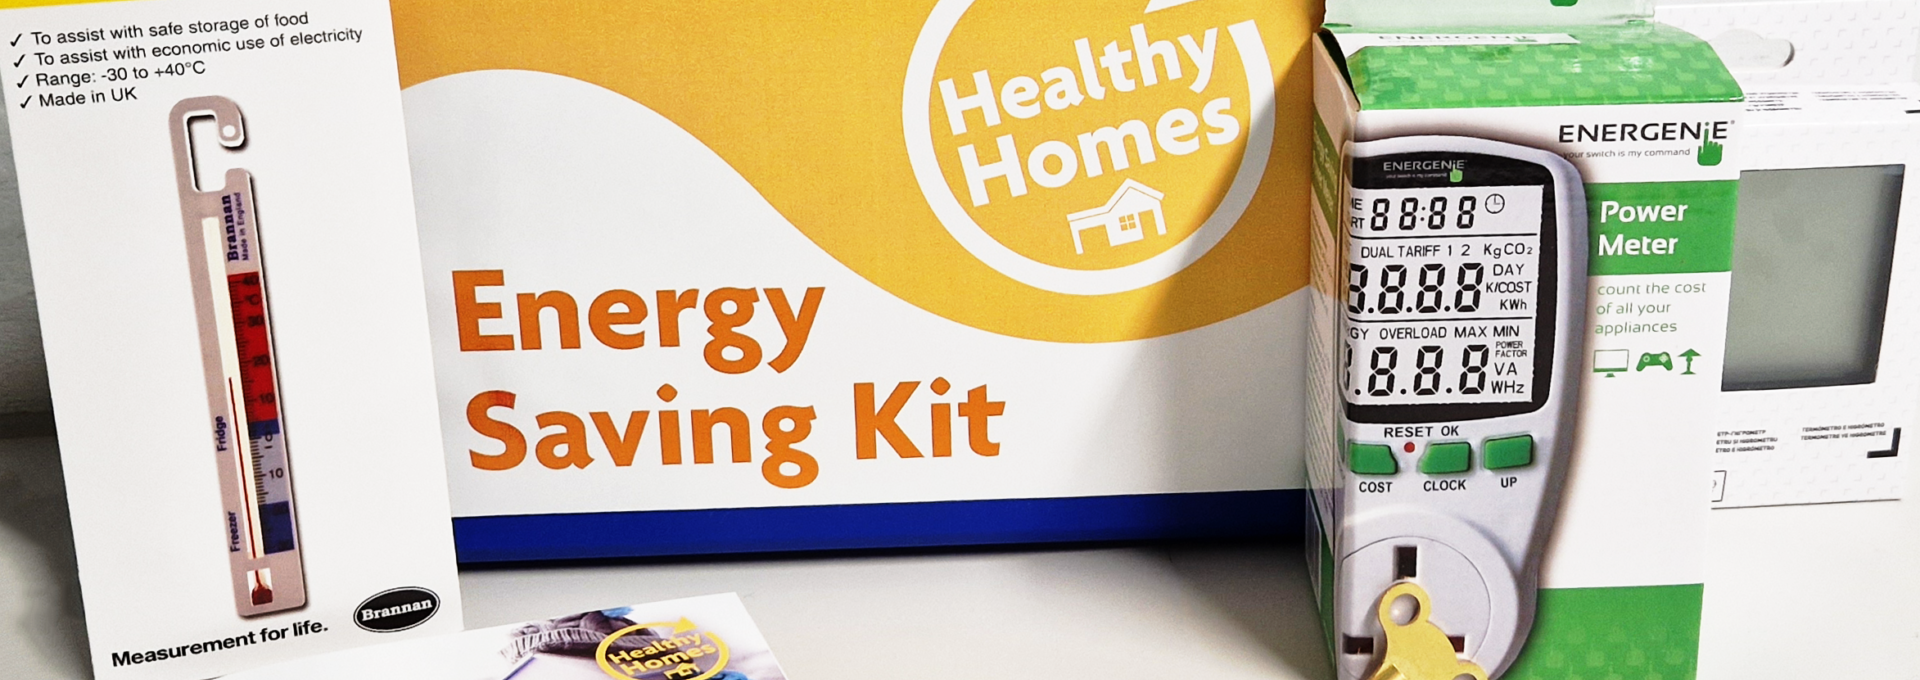 Energy saving kit 